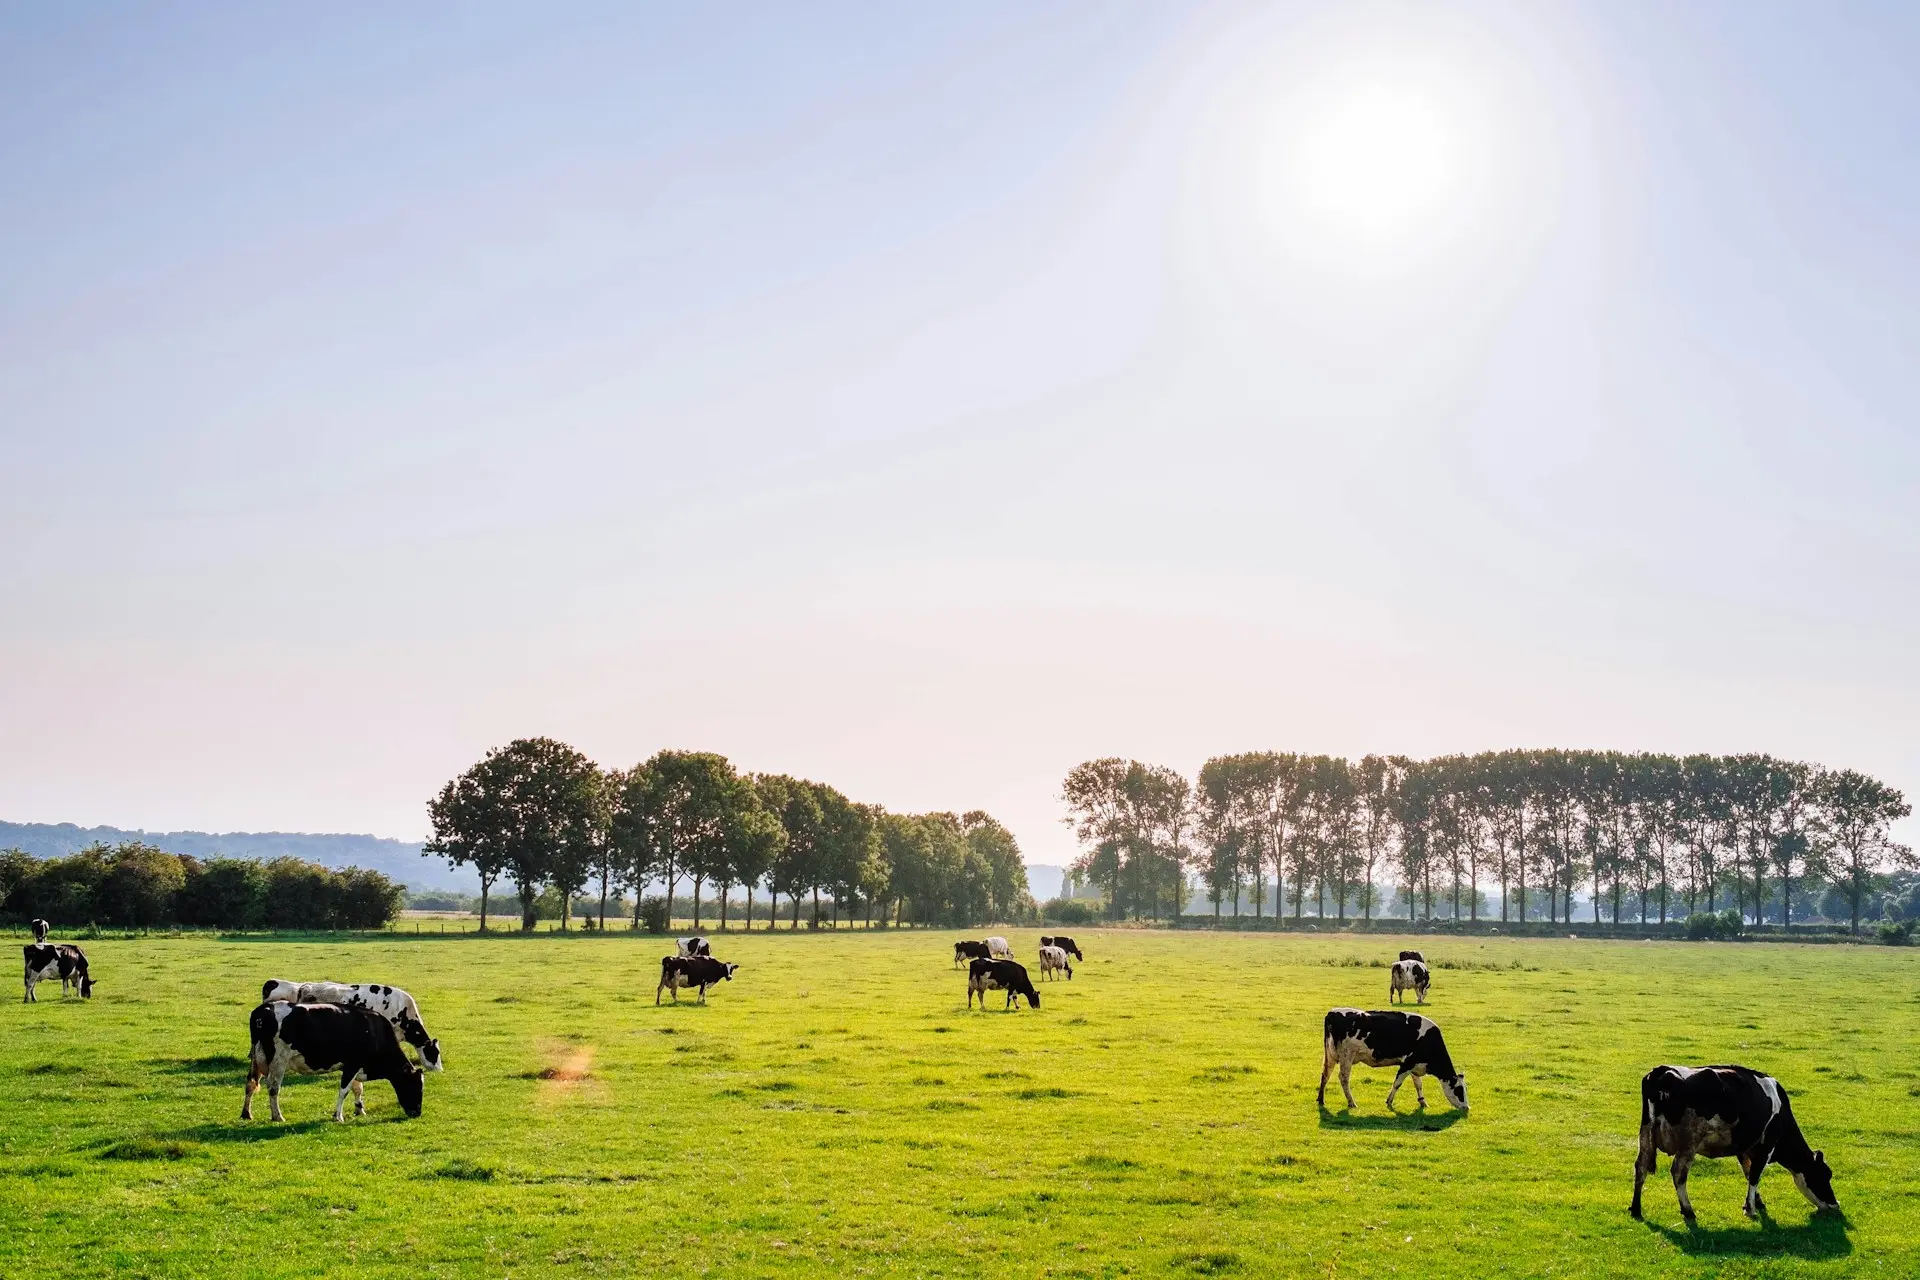 Des vaches en train de paître dans un champ, sous le soleil, avec des arbres en fond.